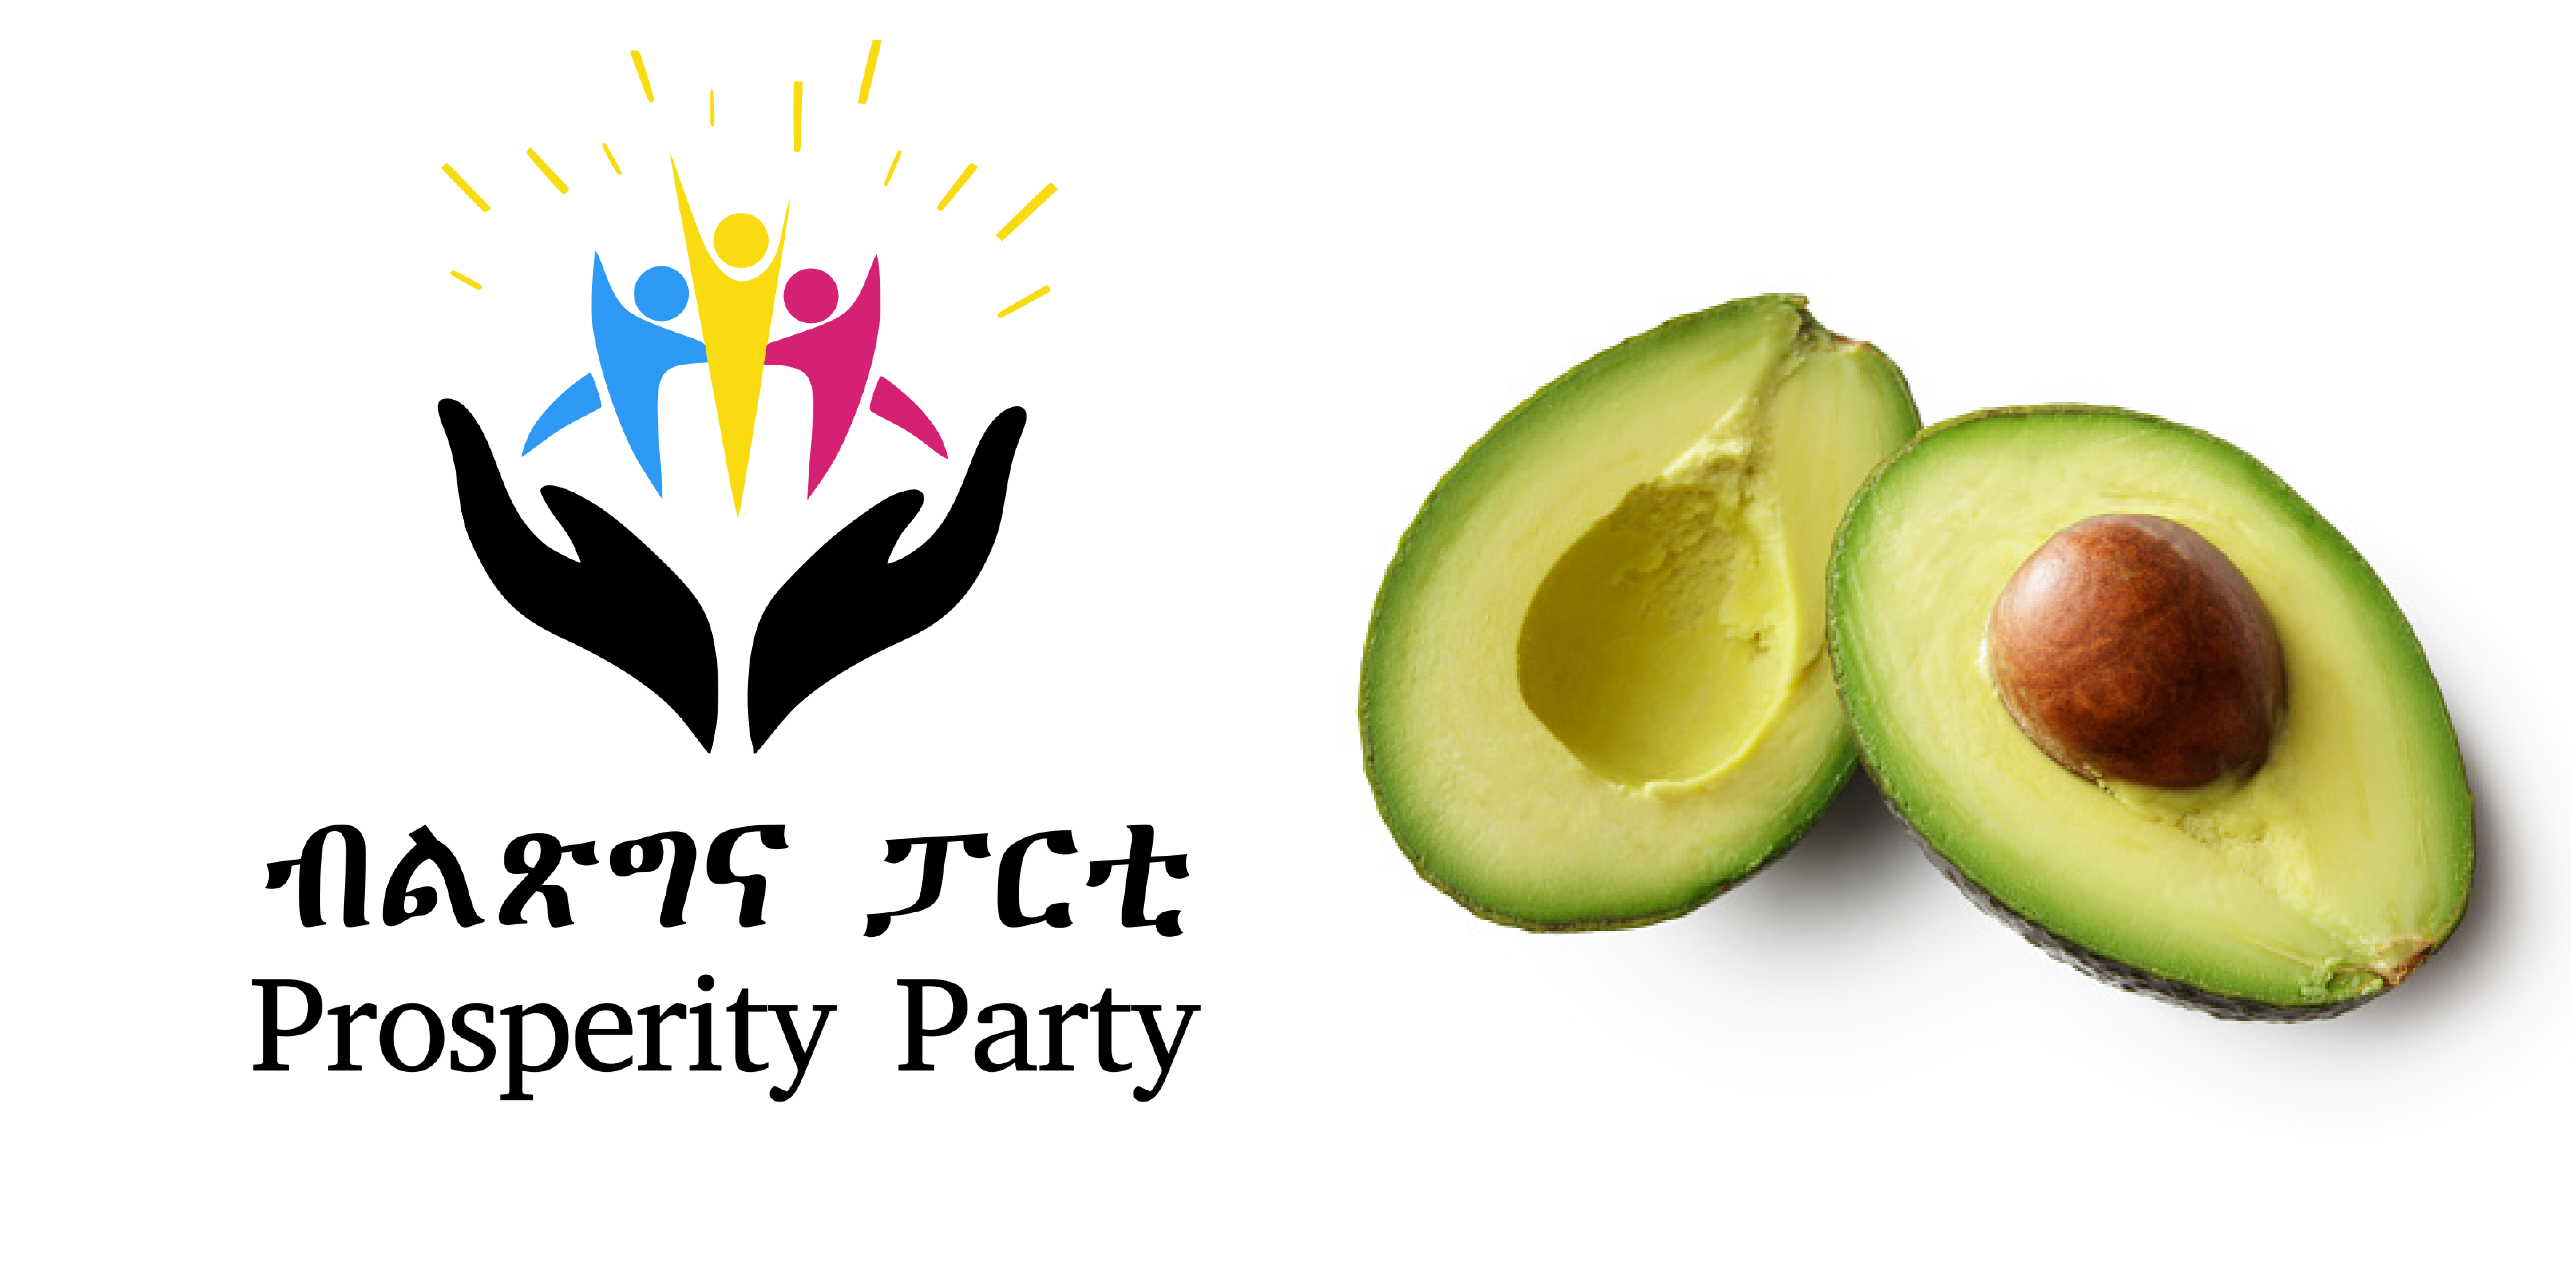  Prosperity Party and Avocado